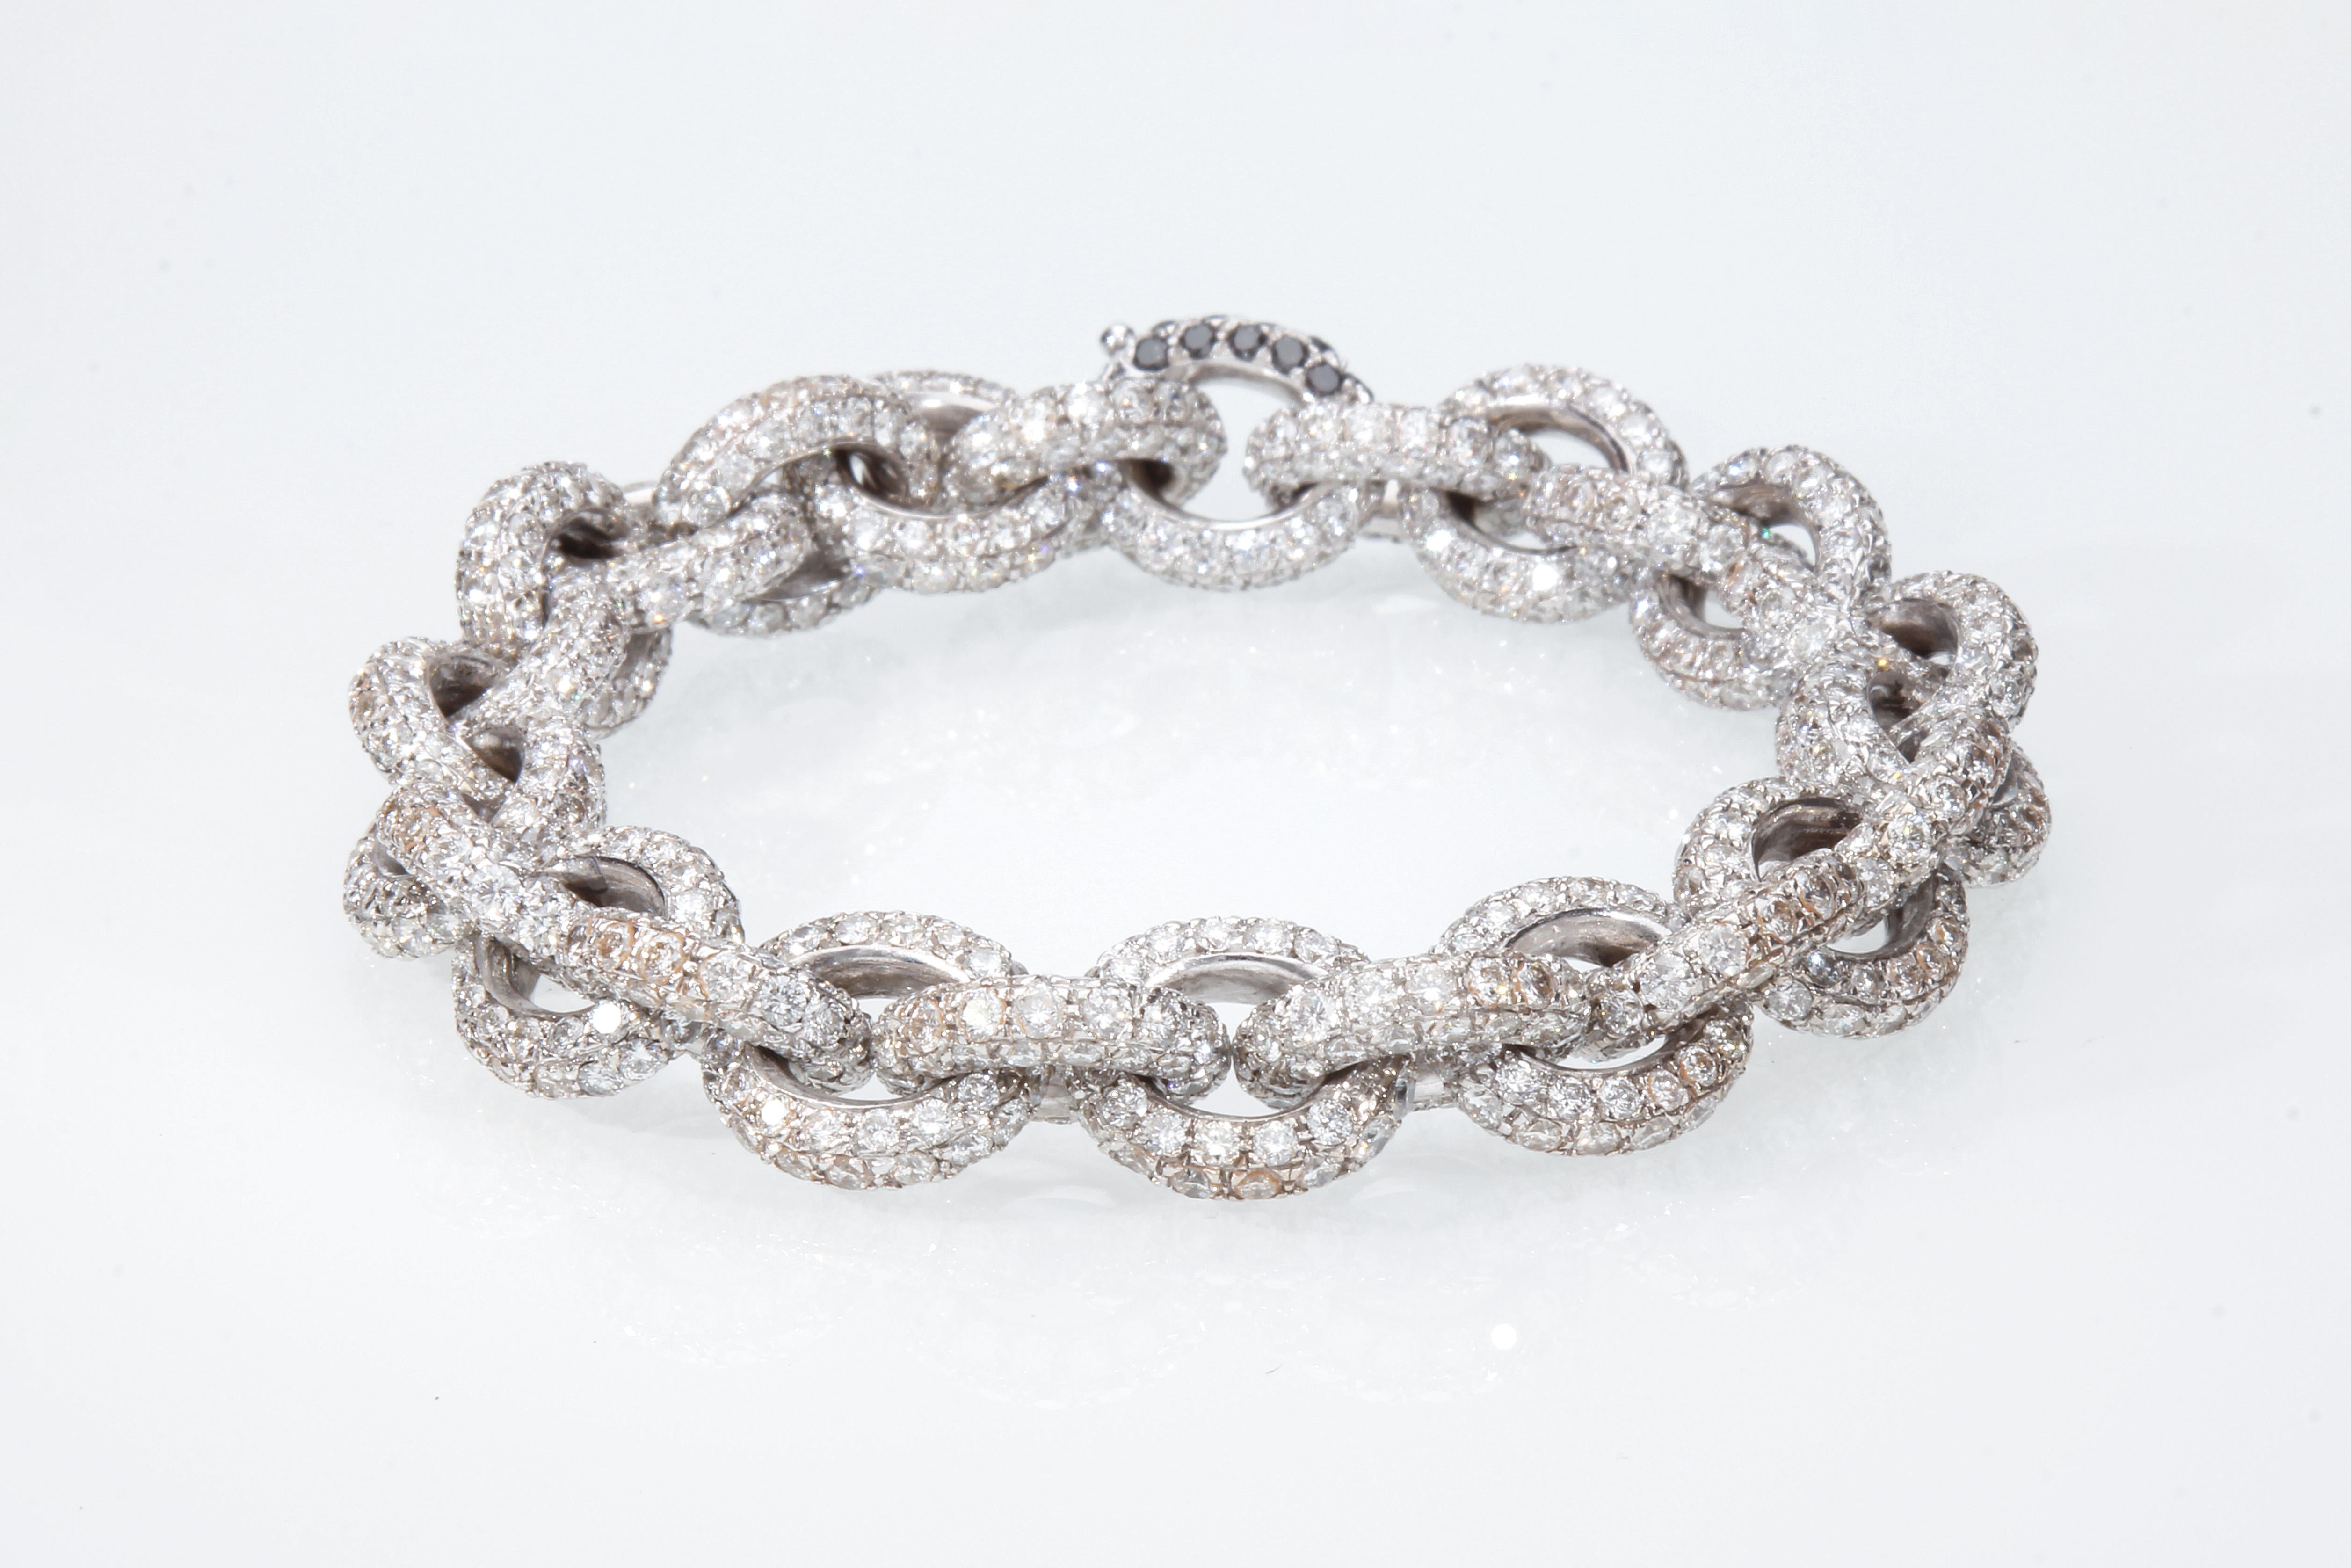 Le bracelet est un modèle à chaîne, et se compose de vingt-sept maillons ronds sur lesquels sont sertis 30,76 ct de diamants blancs. Le bracelet est en or blanc 18 carats.
La fermeture du bracelet est parfaitement invisible, pour pouvoir la